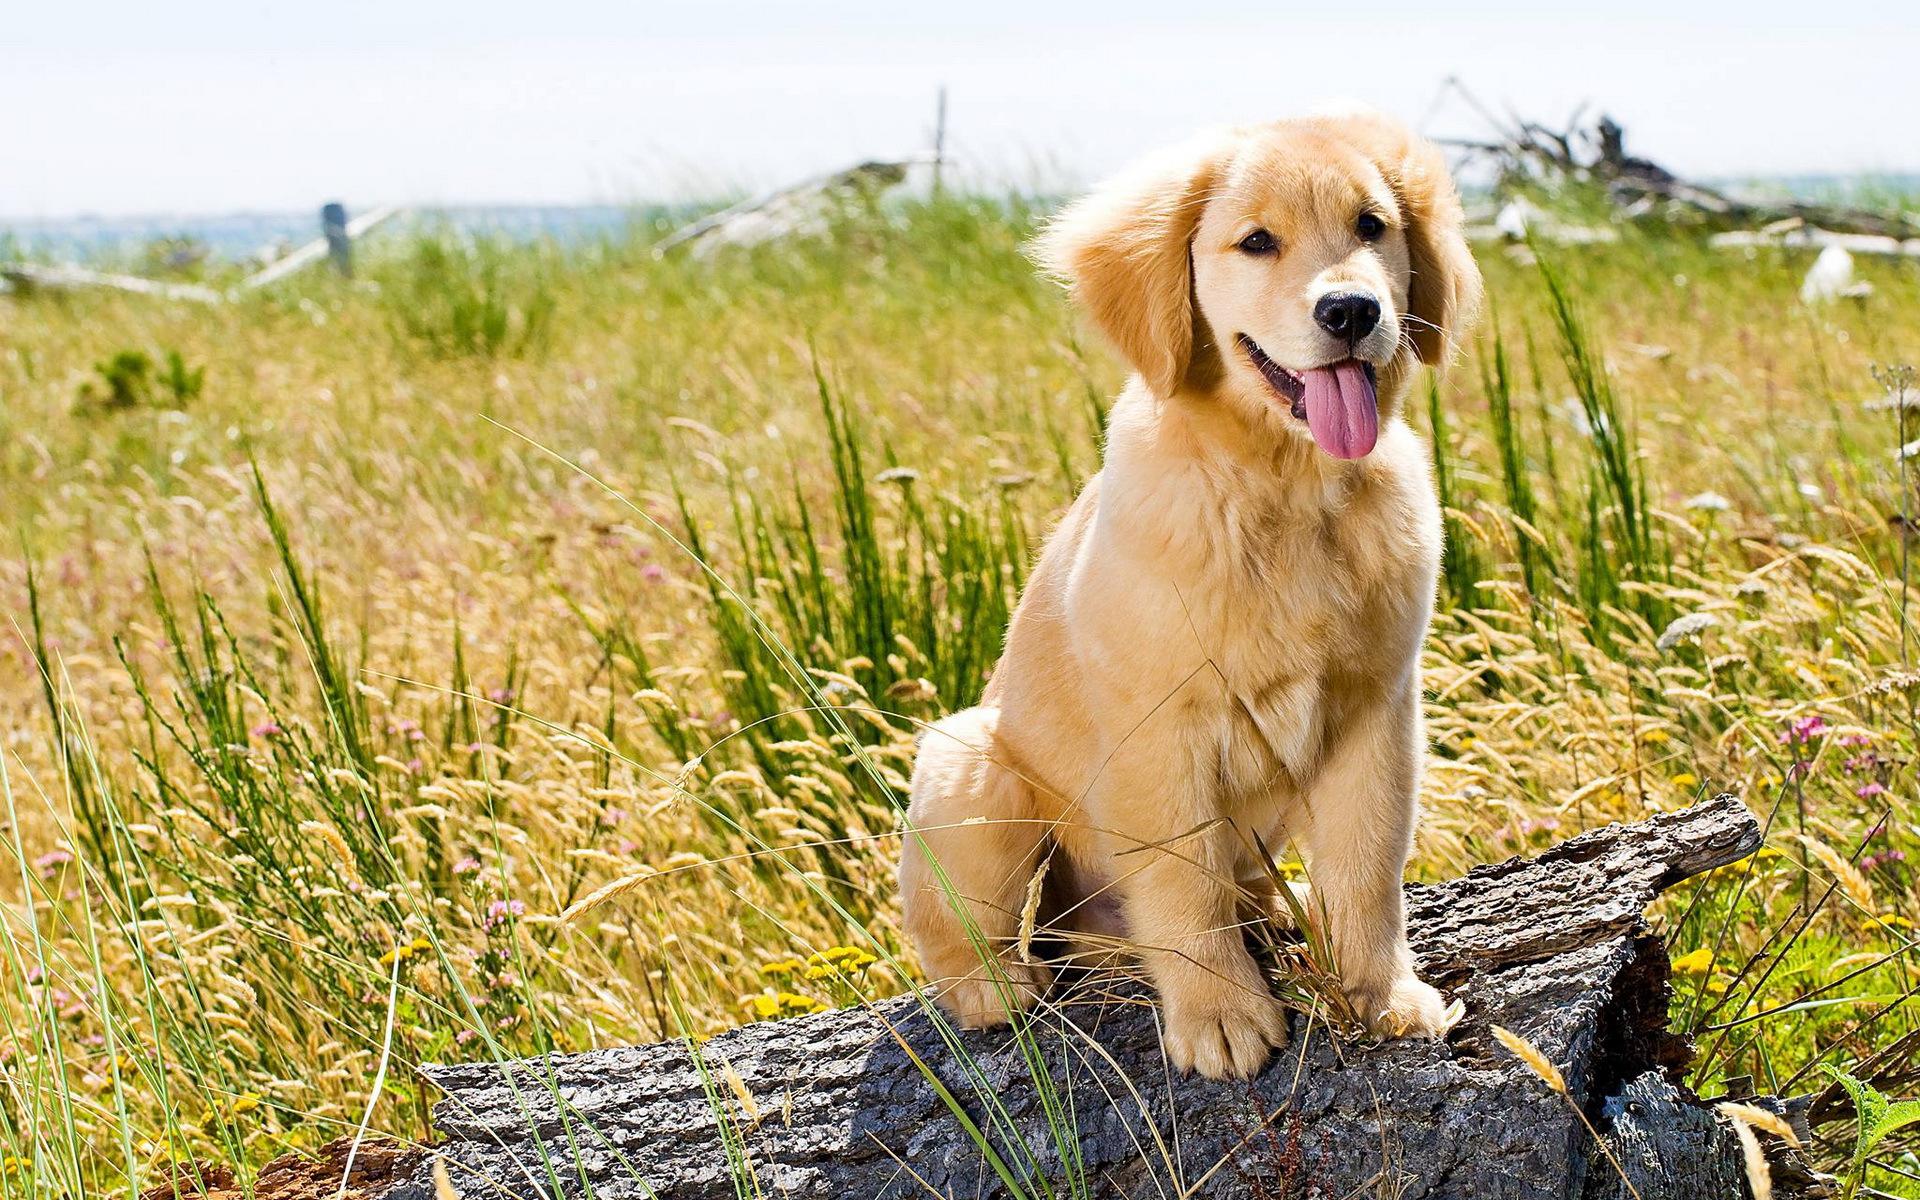 Hình nền chó con vàng: Hình nền chó con vàng chắc chắn sẽ đem đến niềm vui và sự thư giãn cho bạn trong suốt cả ngày. Hãy cùng xem những bức ảnh đáng yêu của những chú chó con vàng, để cảm nhận sự đáng yêu và thân thiện của chúng.